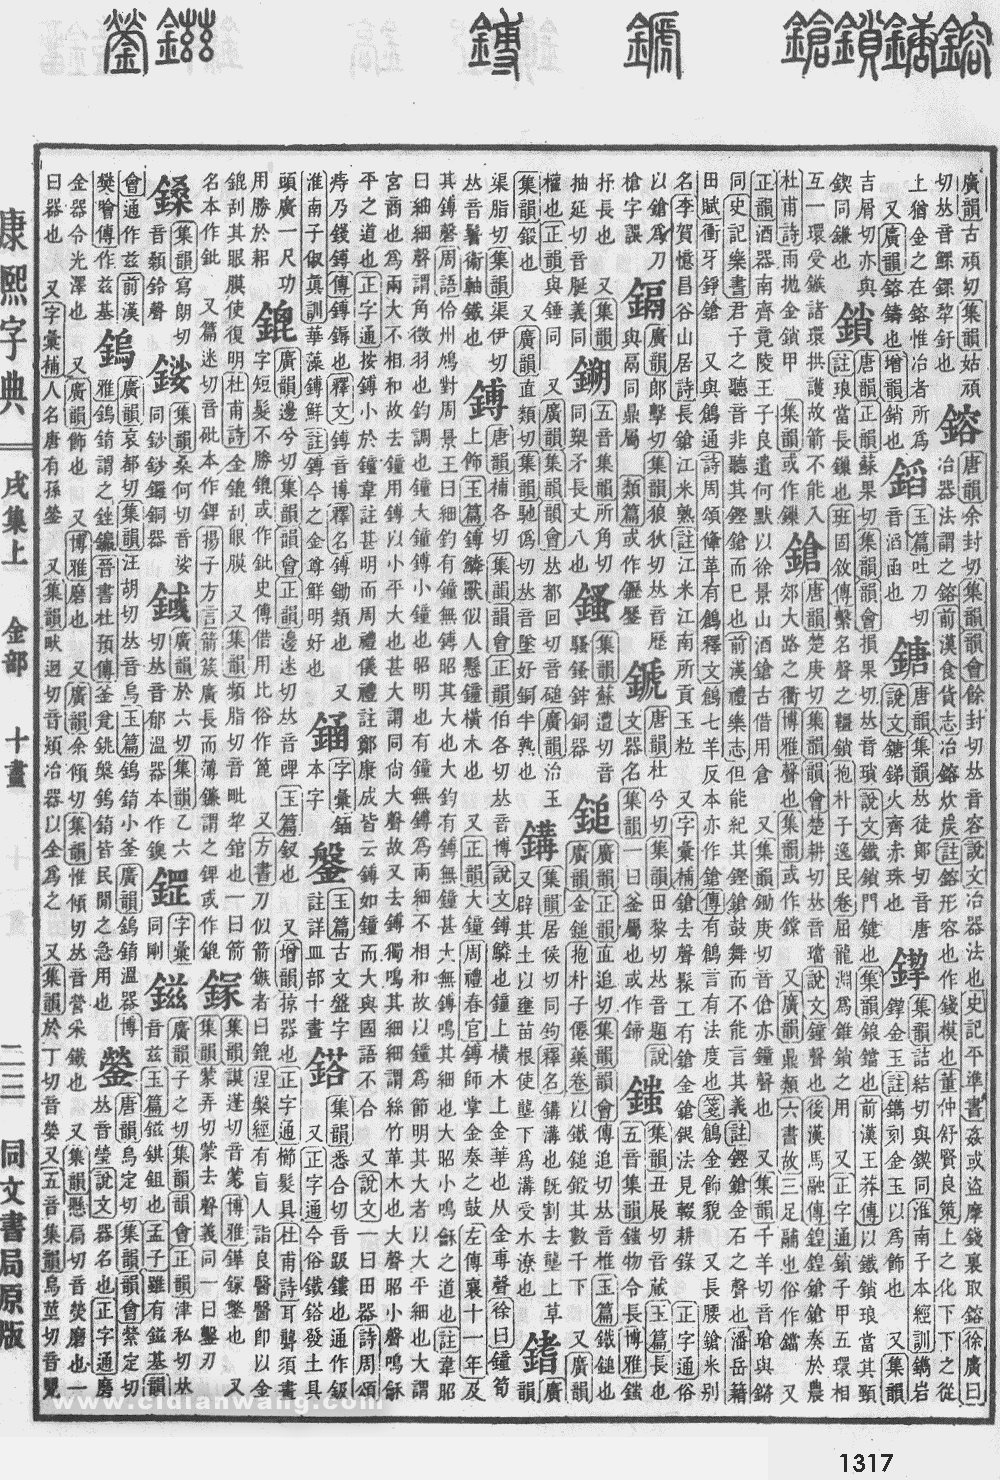 康熙字典掃描版第1317頁